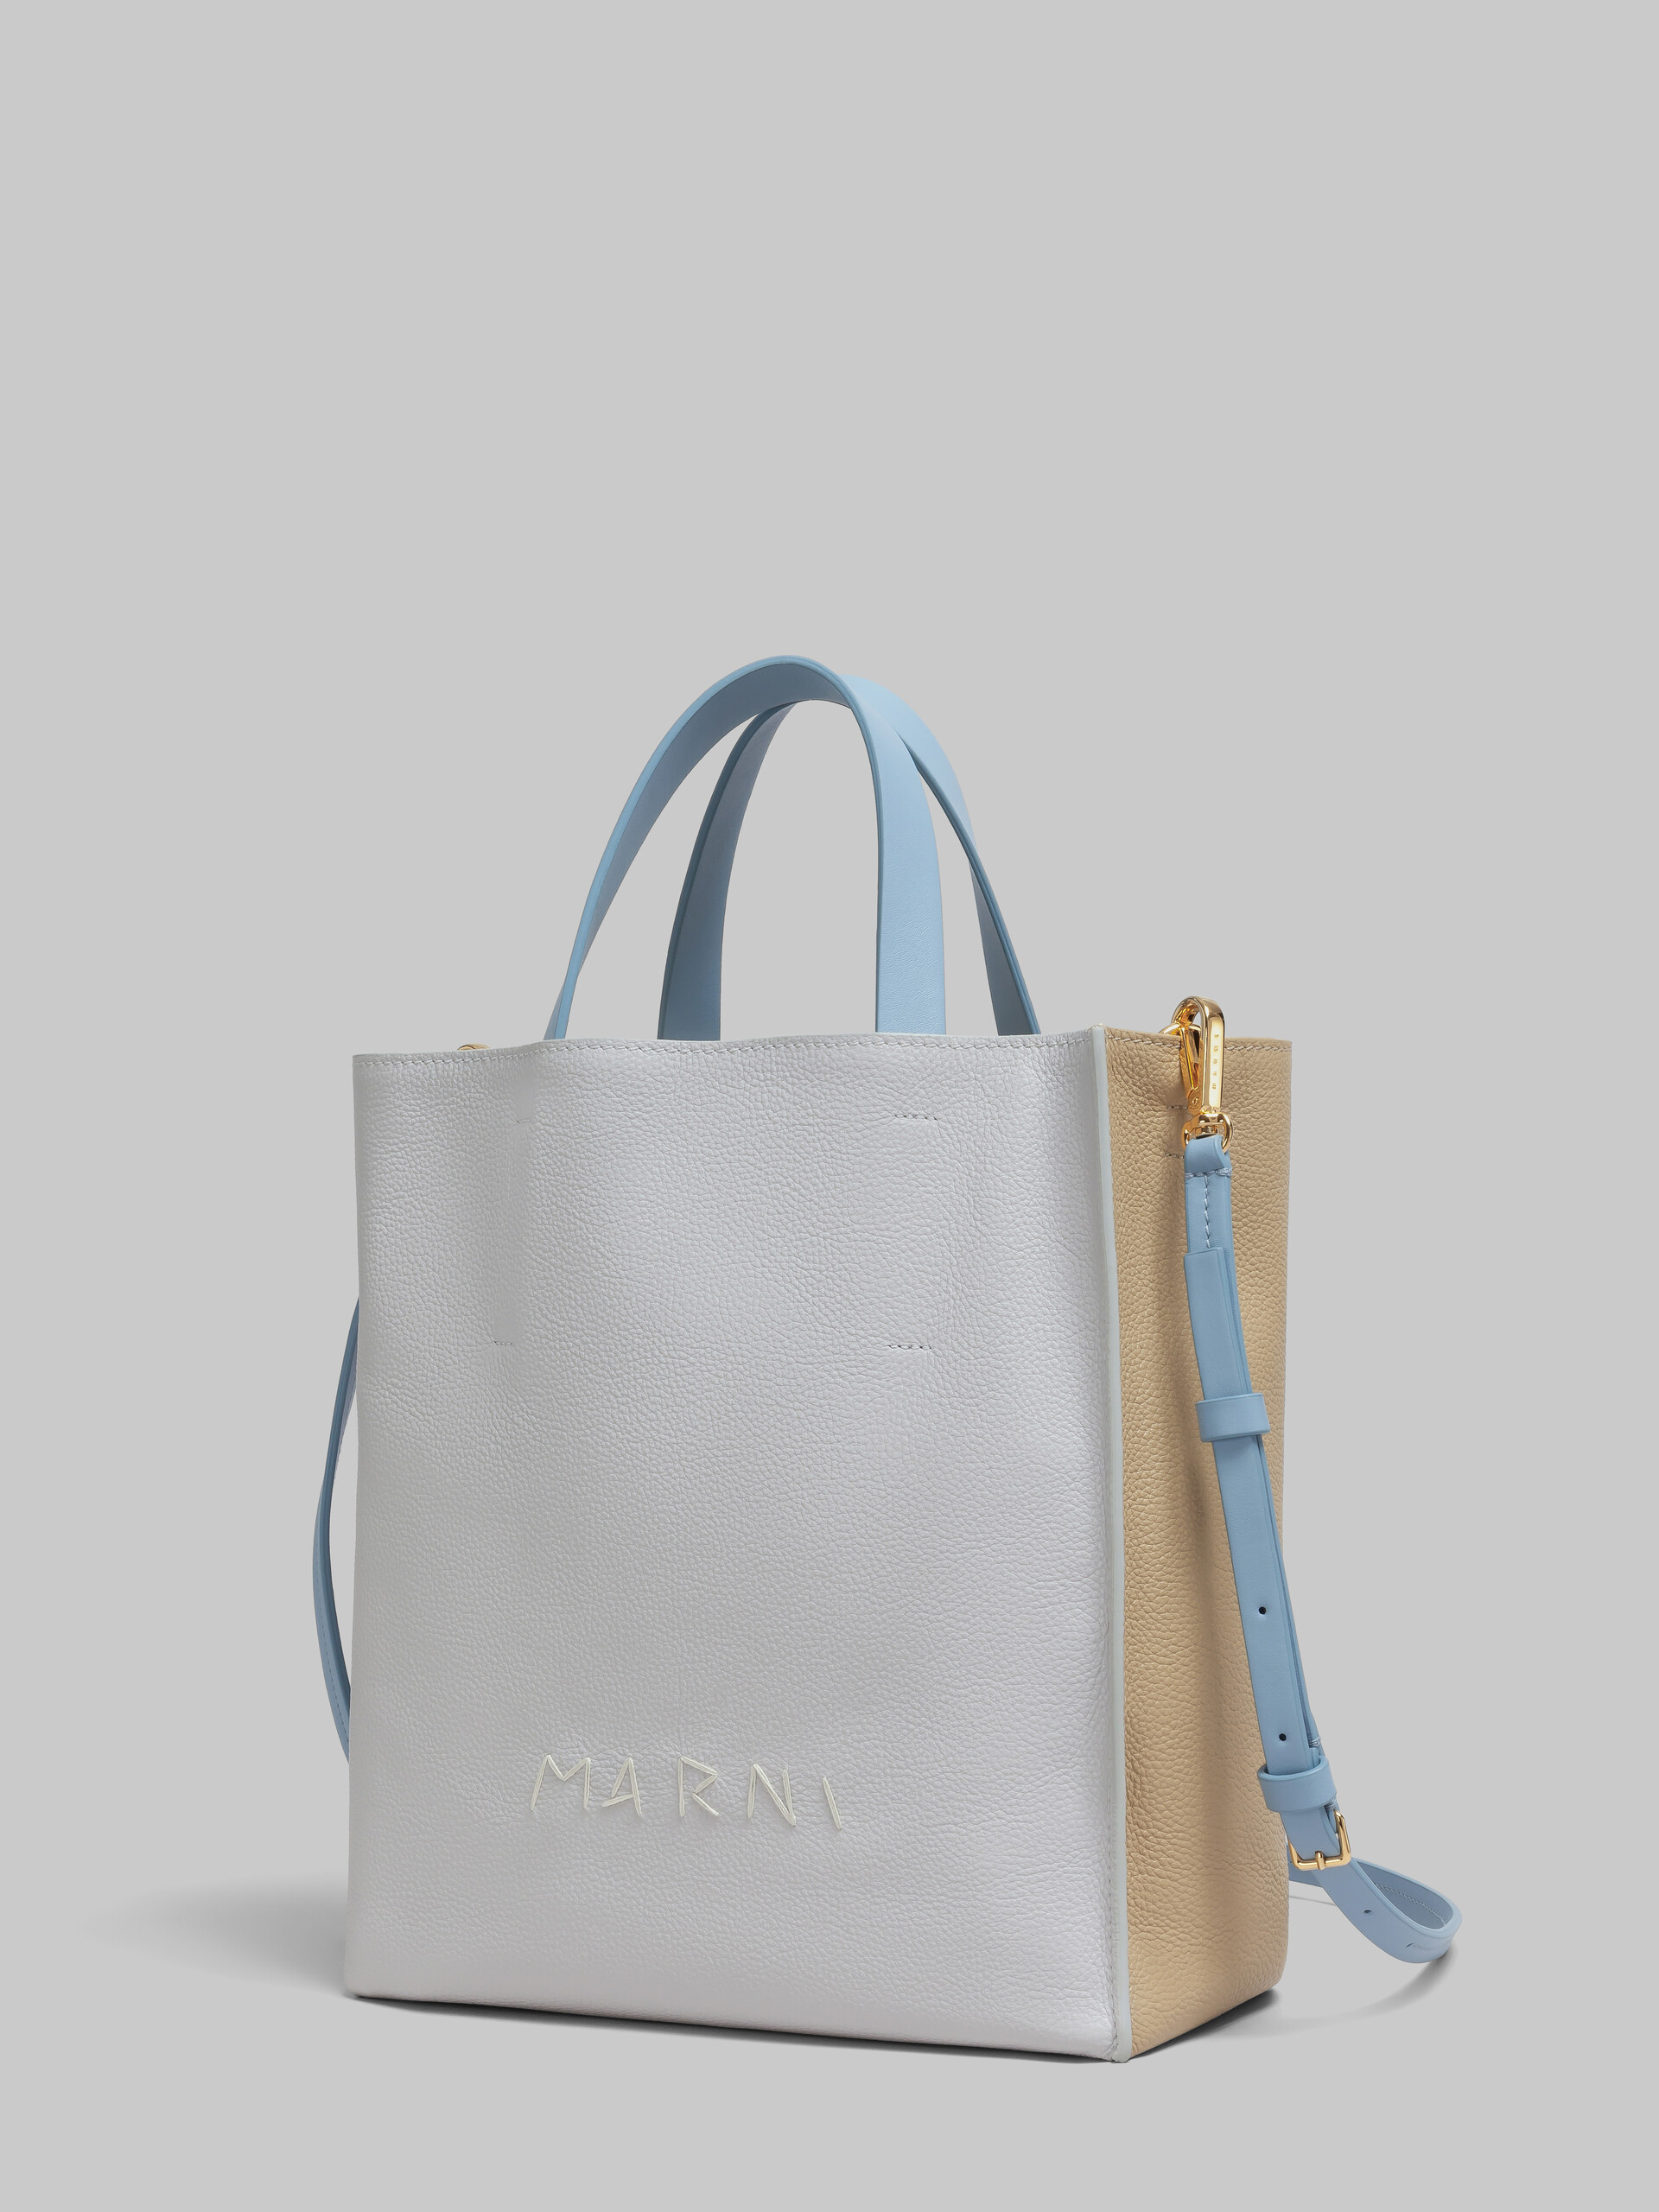 Museo Soft bag Mini in pelle bianca e marrone con impunture Marni - Borse shopping - Image 4